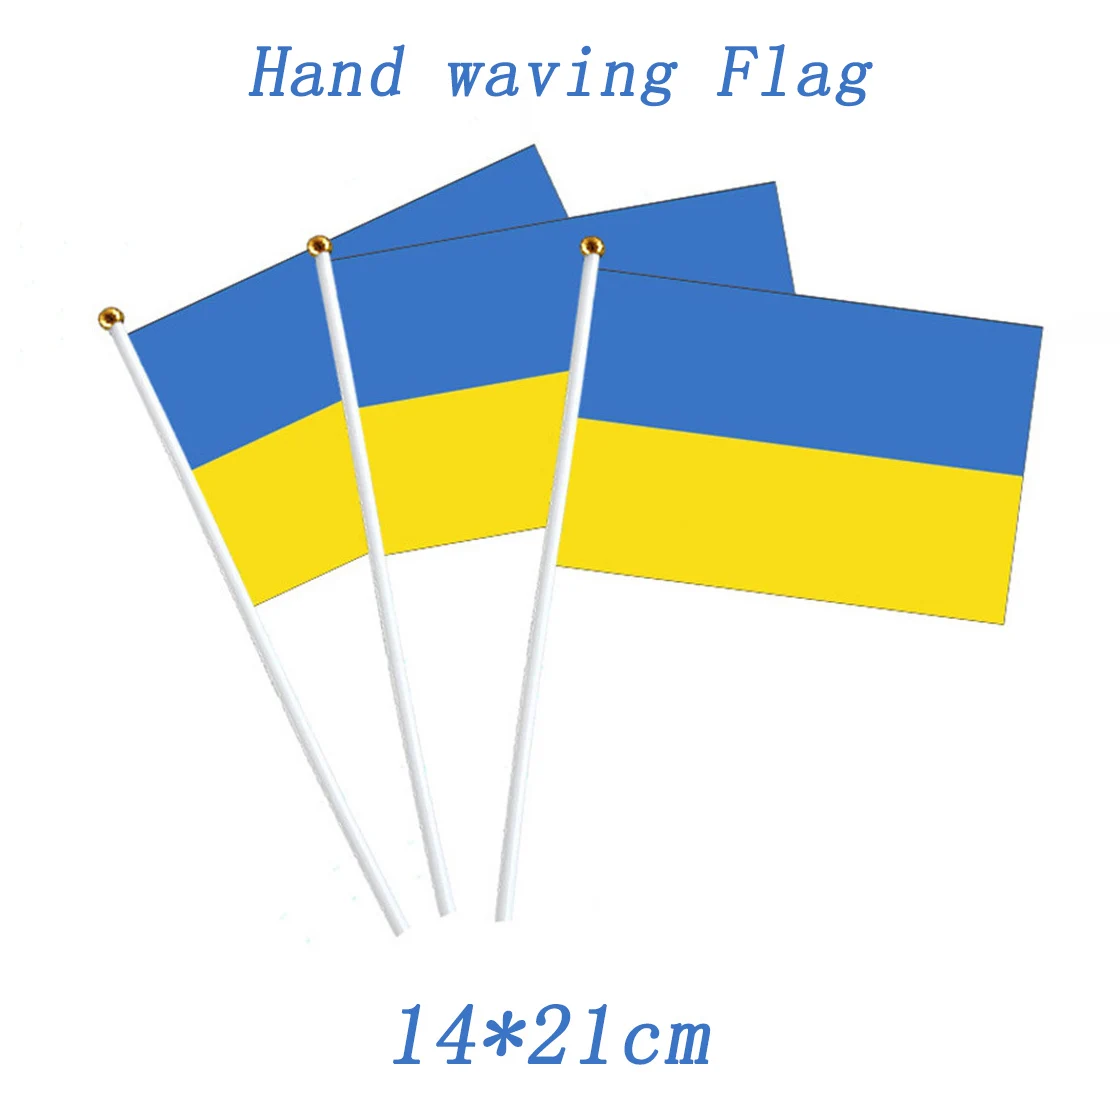 Национальный флаг Украины полосатый маленький ручной флаг из полиэстера, голубой и желтый цвет, украинские флаги, быстрая доставка, 14*21 см для мира